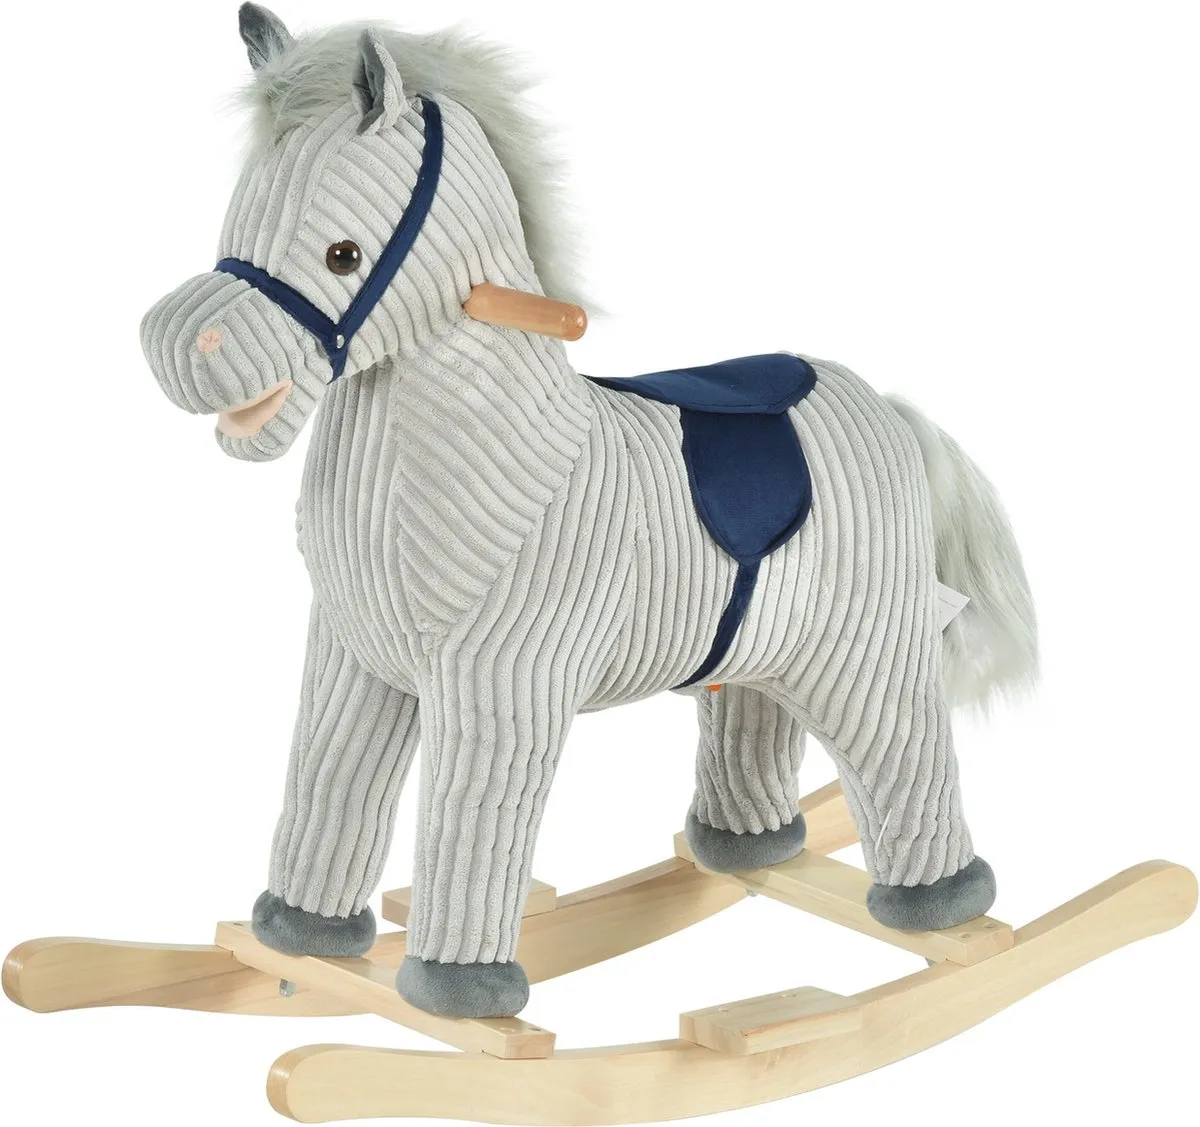 Hobbeldier - Hobbelpaard - Paarden - Speelgoed voor 36-72 maanden - 65L x 32,5W x 61H cm - grijs speelgoed